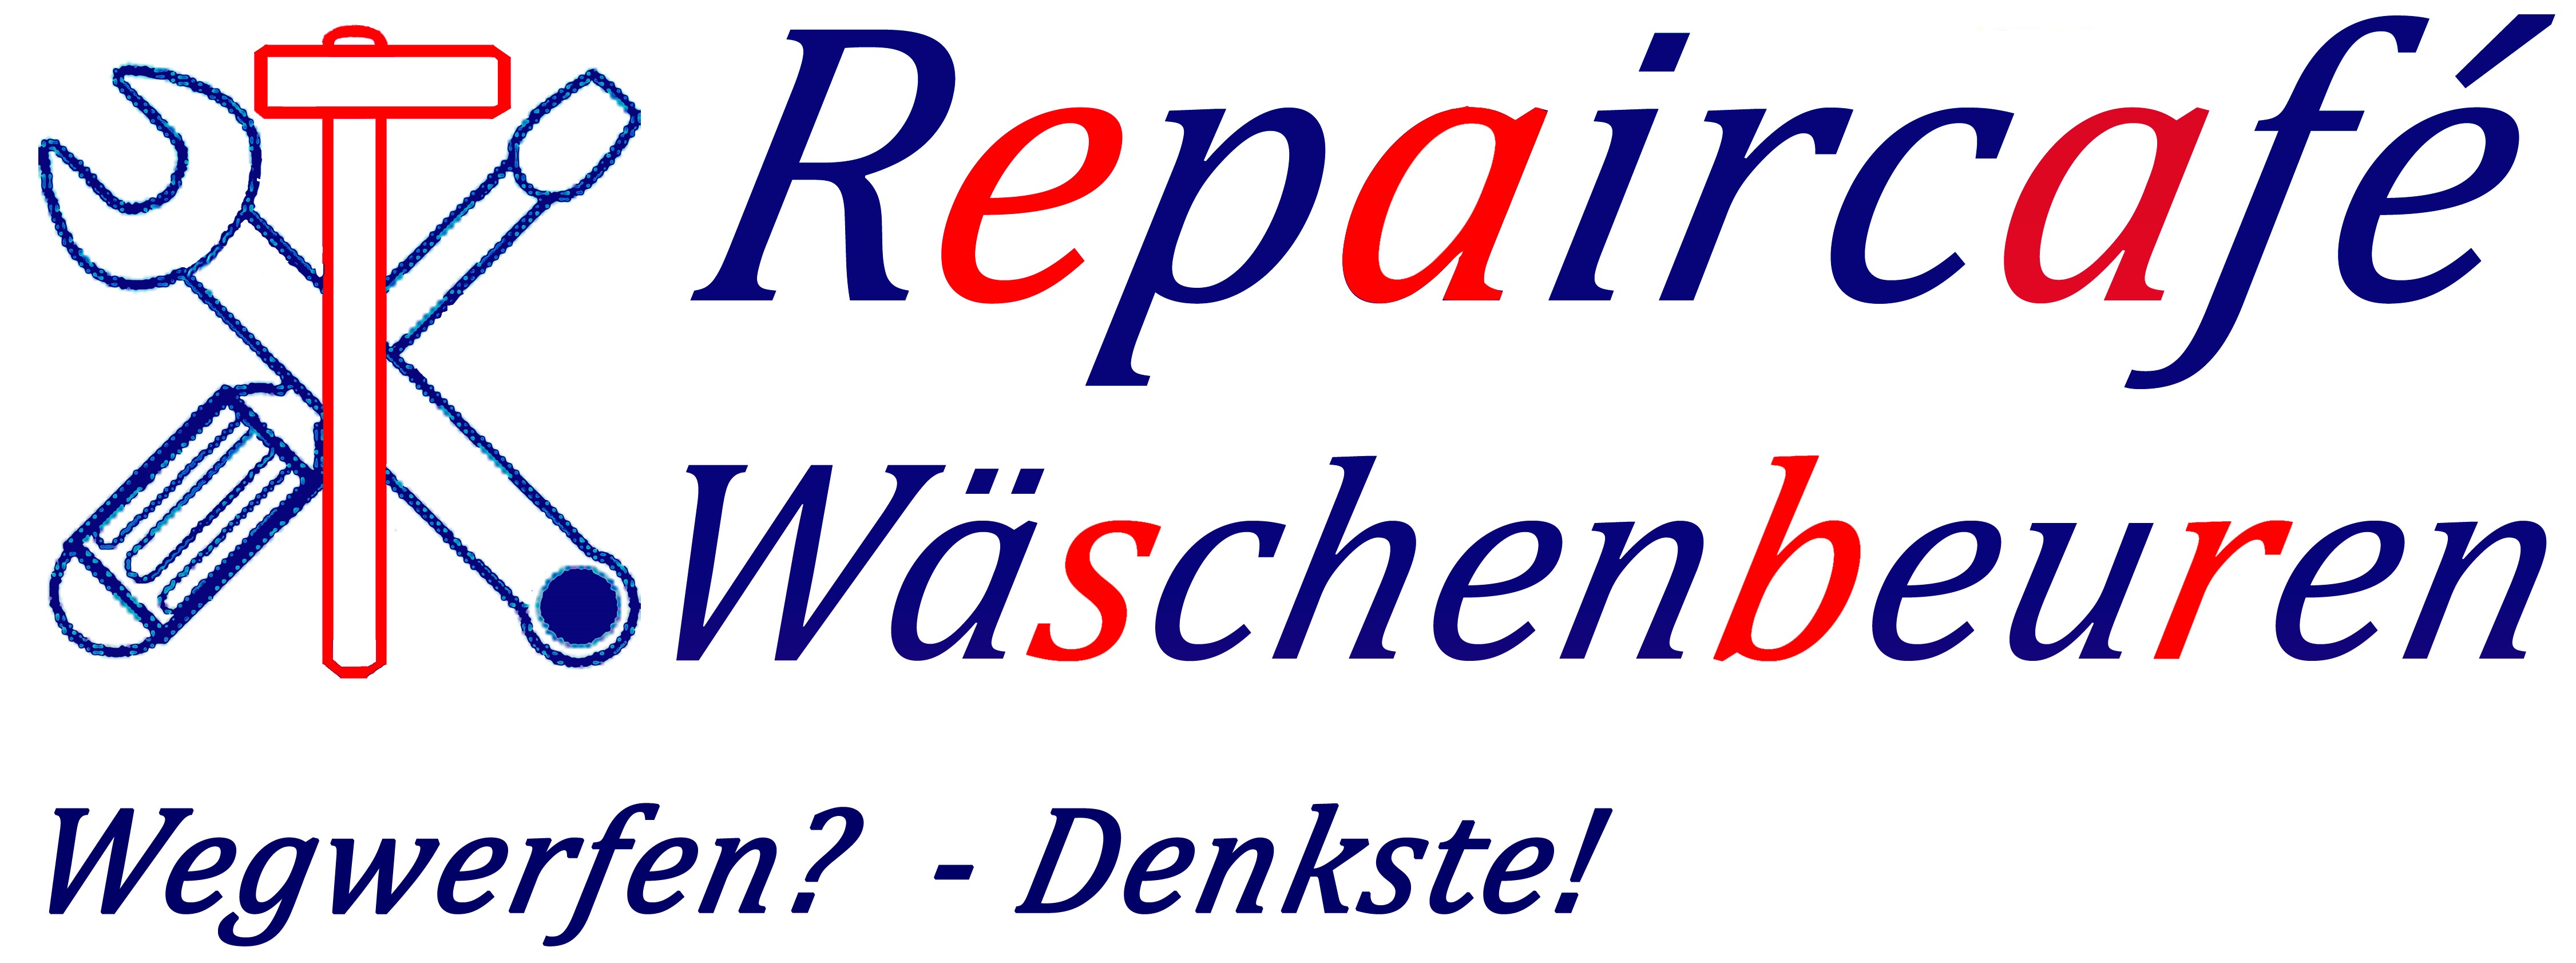 Repaircafe_Logo.jpg